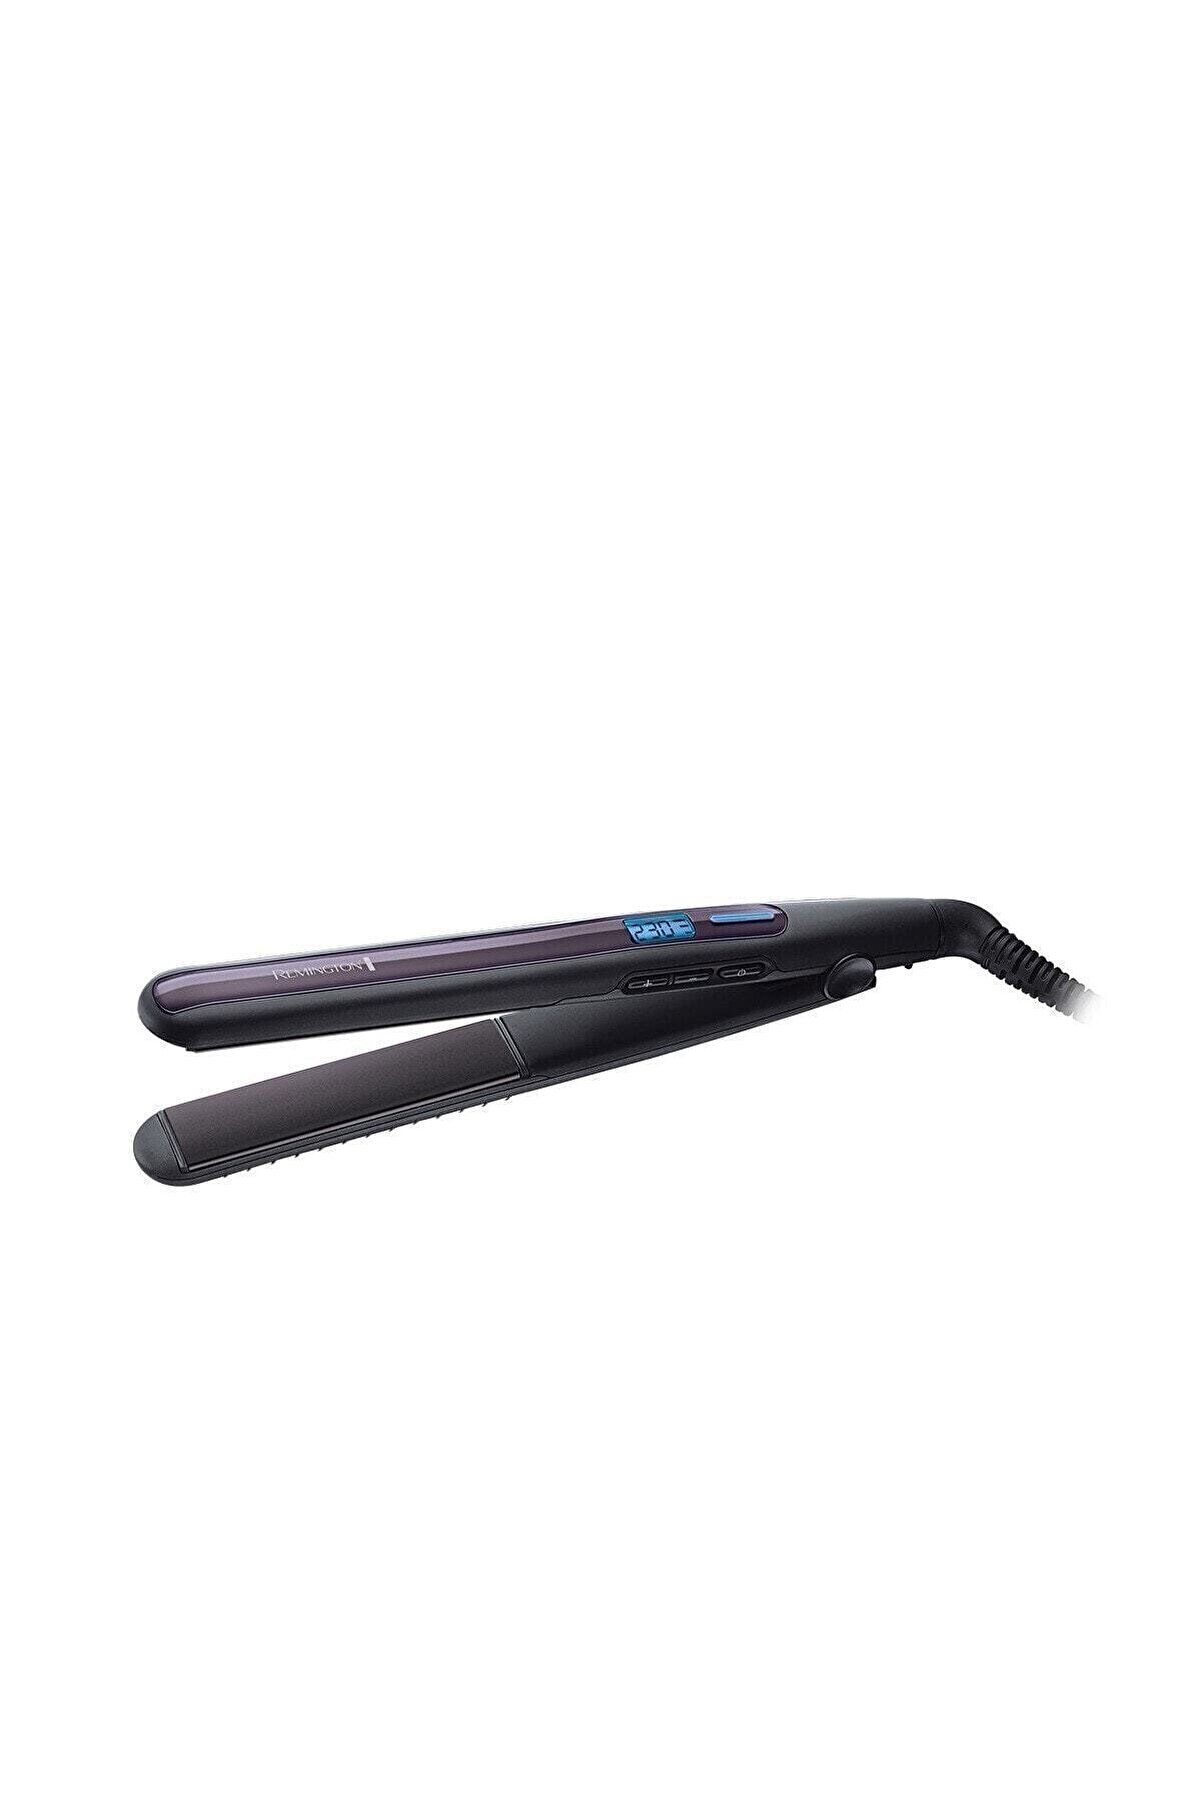 Remington Pro Sleek & Curl Ince Dijital Saç Düzleştirici S6505 4008496818259